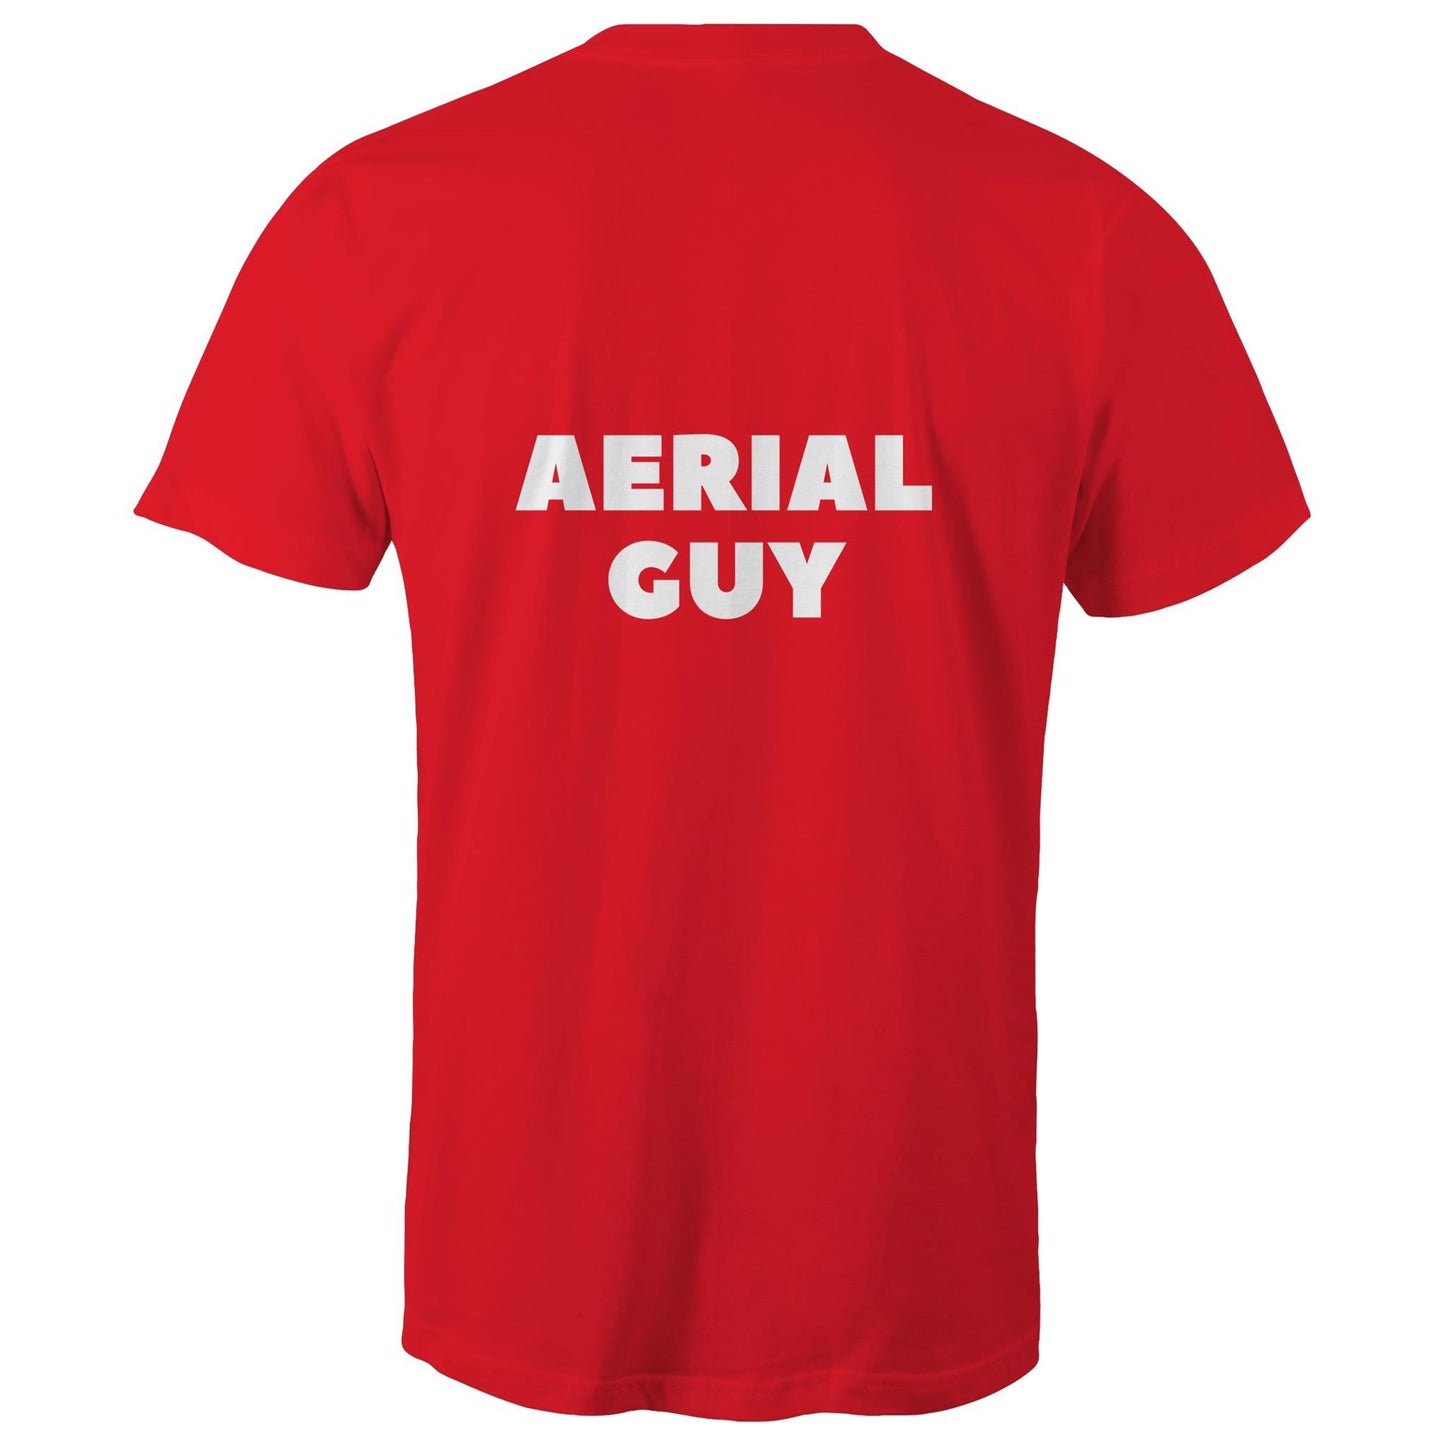 AERIAL GUY - Mens T-Shirt